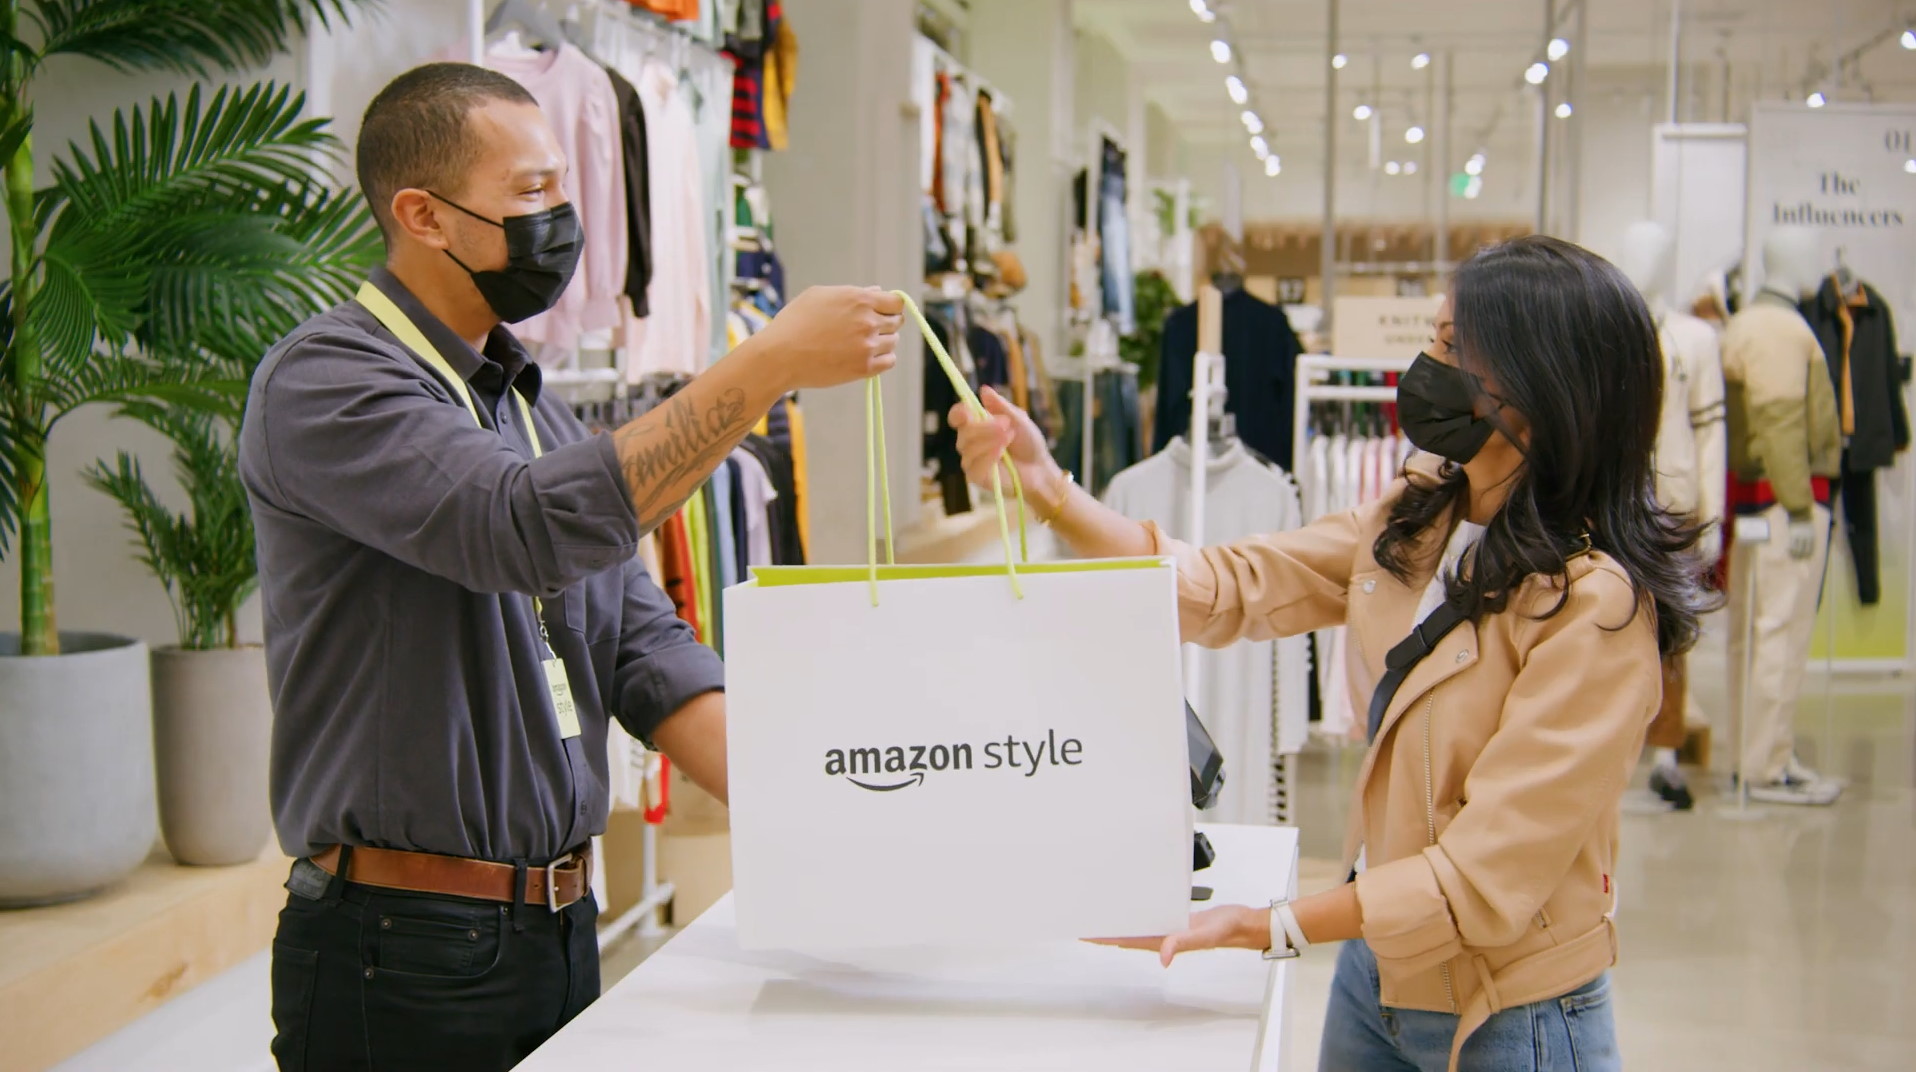 Une cliente effectue un achat dans la future boutique de vêtements Amazon Style. © Amazon